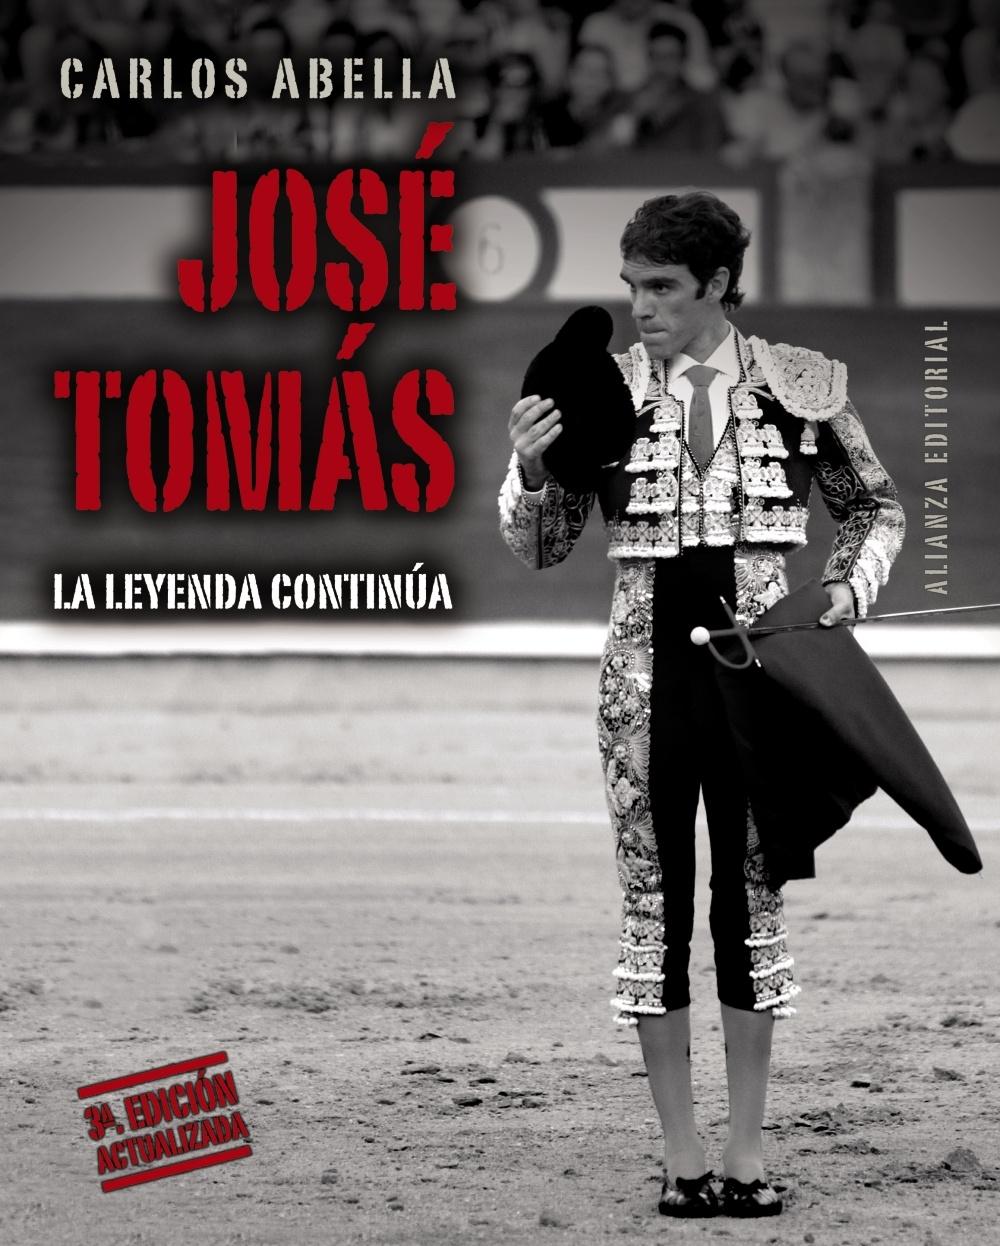 José Tomás "La leyenda continúa"